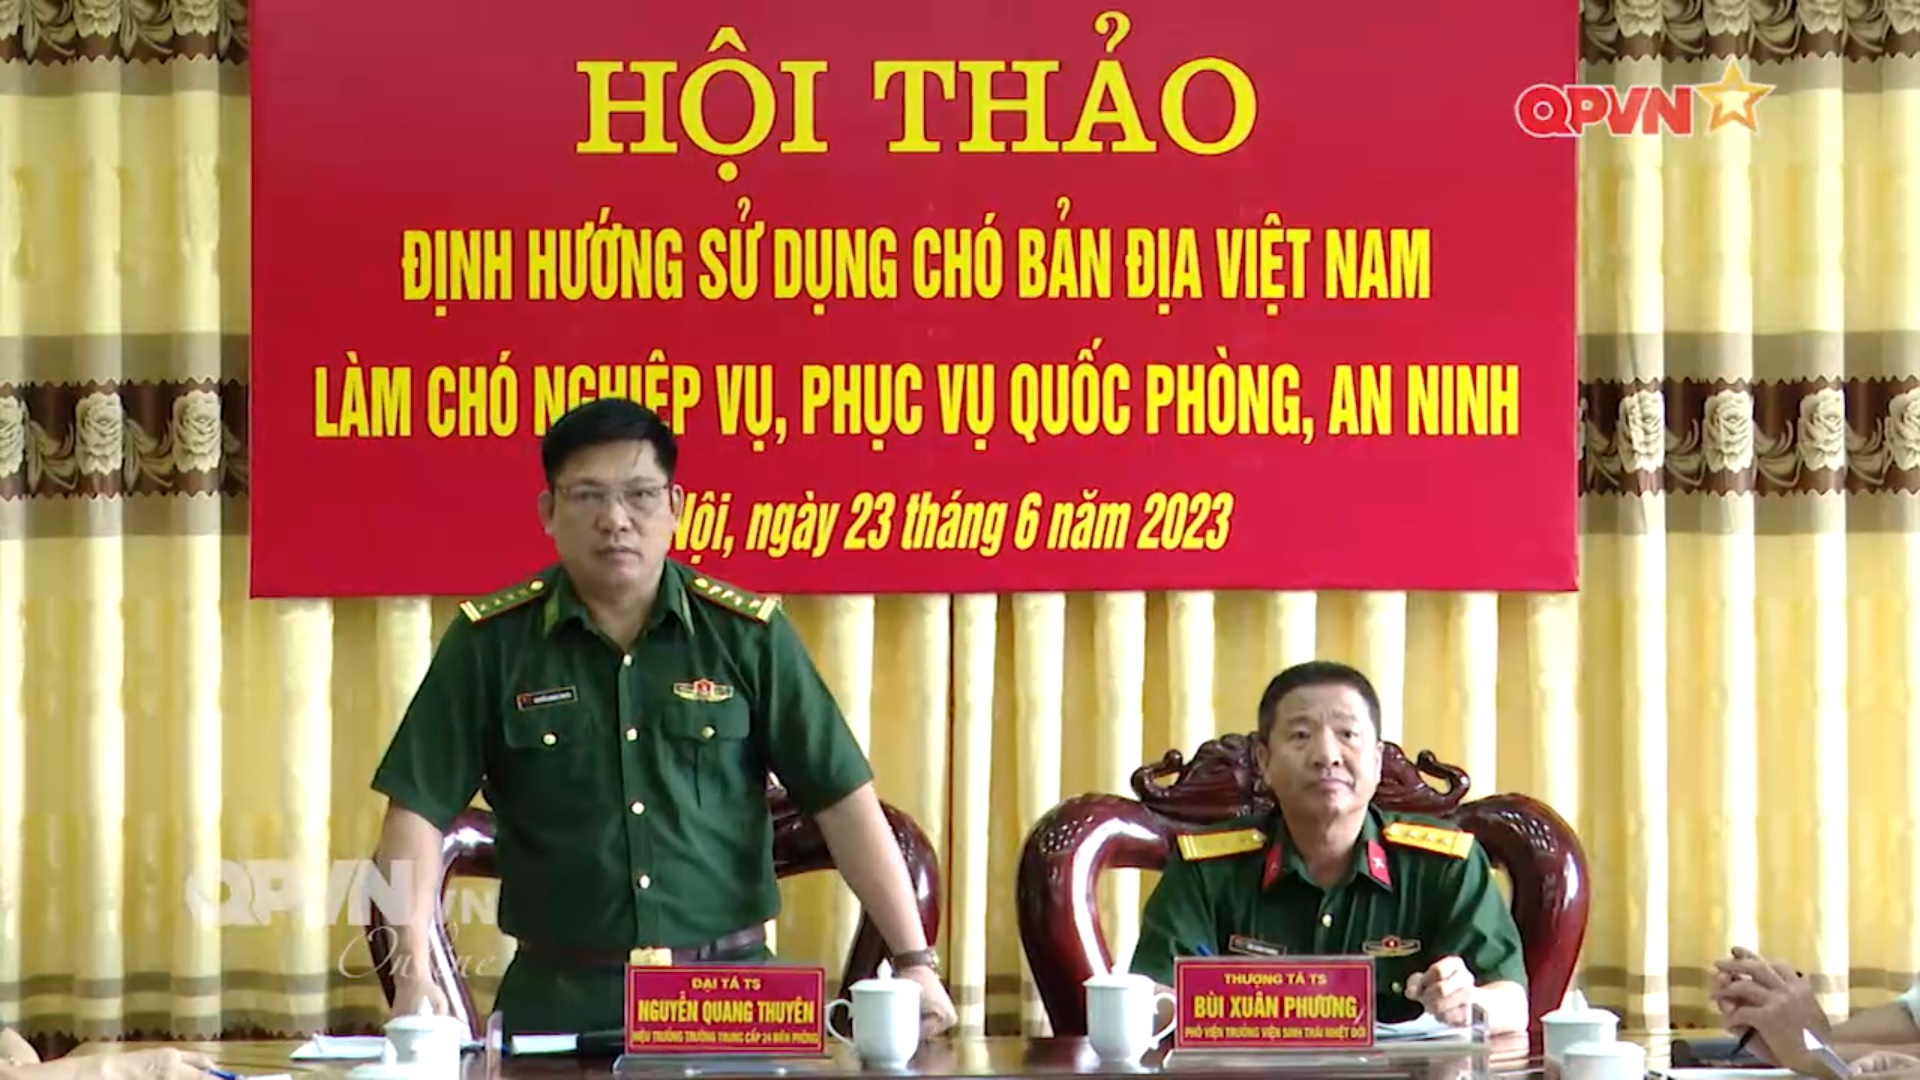 Nghiên cứu chó nghiệp vụ "phiên bản Việt"